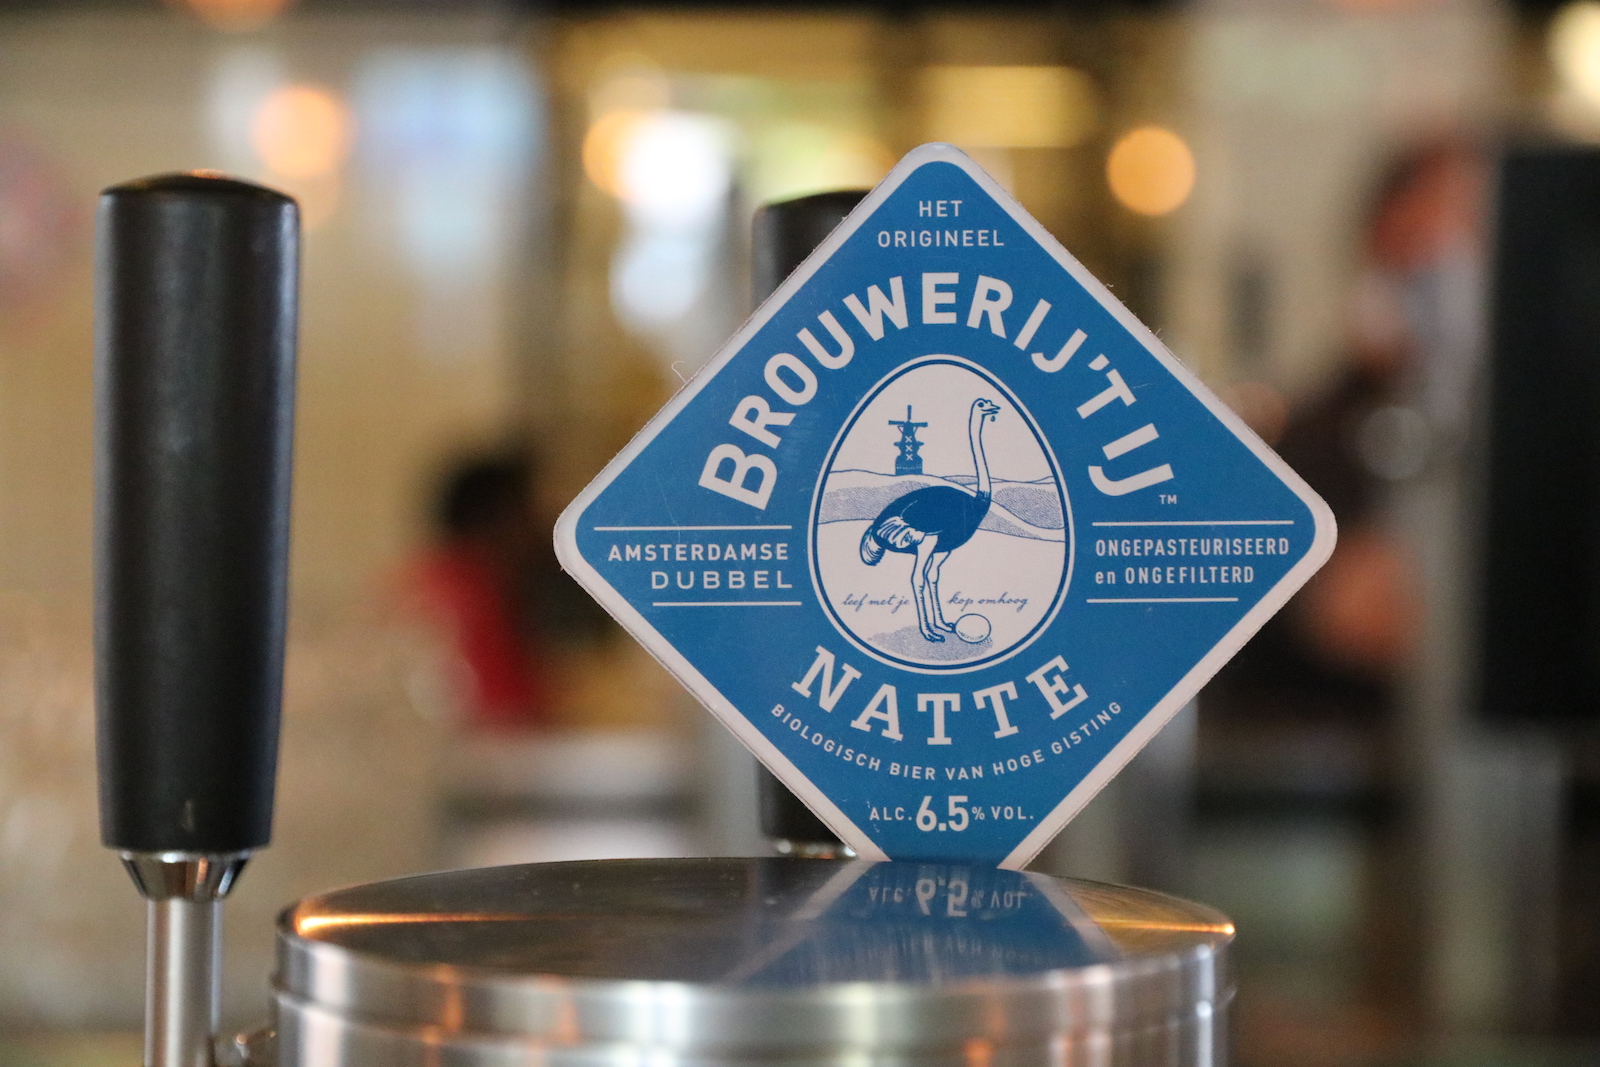 Natte, a classic Dubbel beer of Brouwerij 't IJ